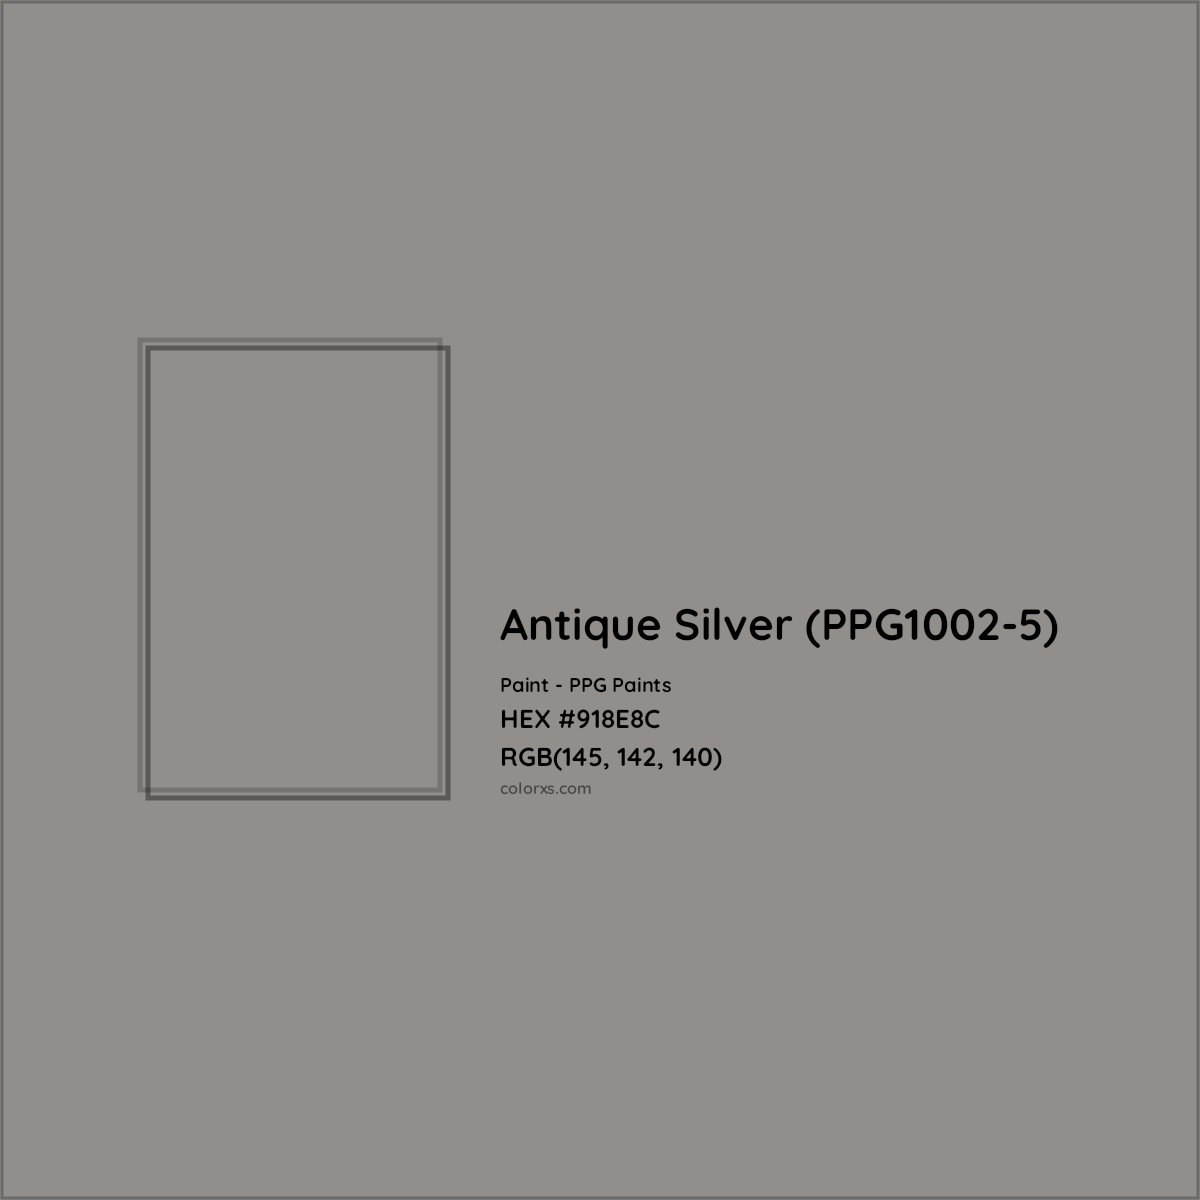 HEX #918E8C Antique Silver (PPG1002-5) Paint PPG Paints - Color Code